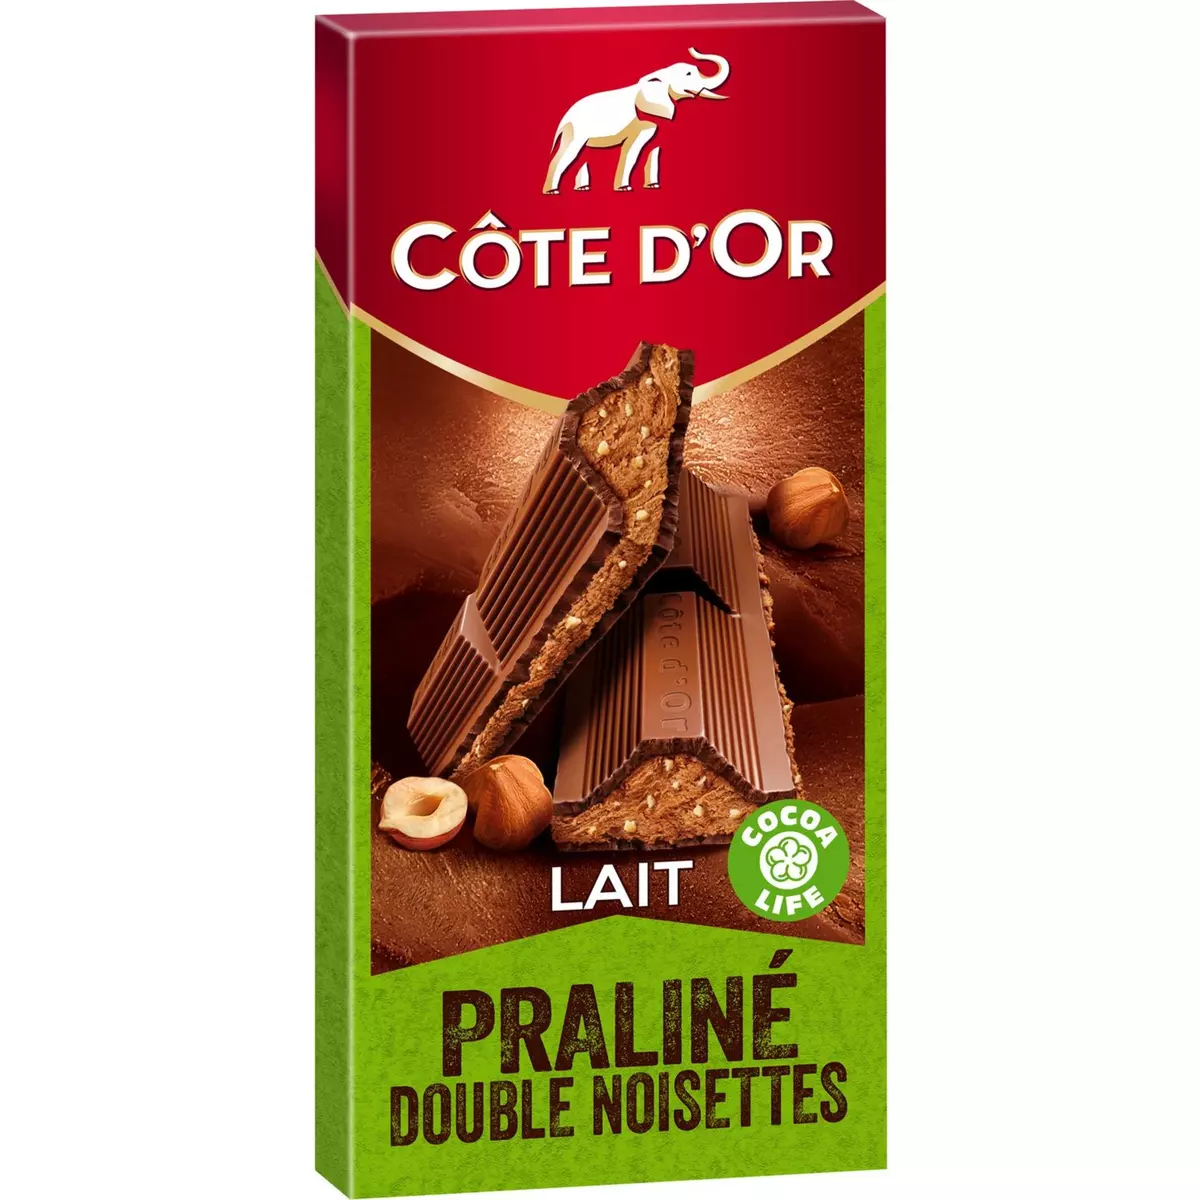 COTE D'OR Tablette de chocolat au lait fourré praliné double noisettes 1 pièce 200g